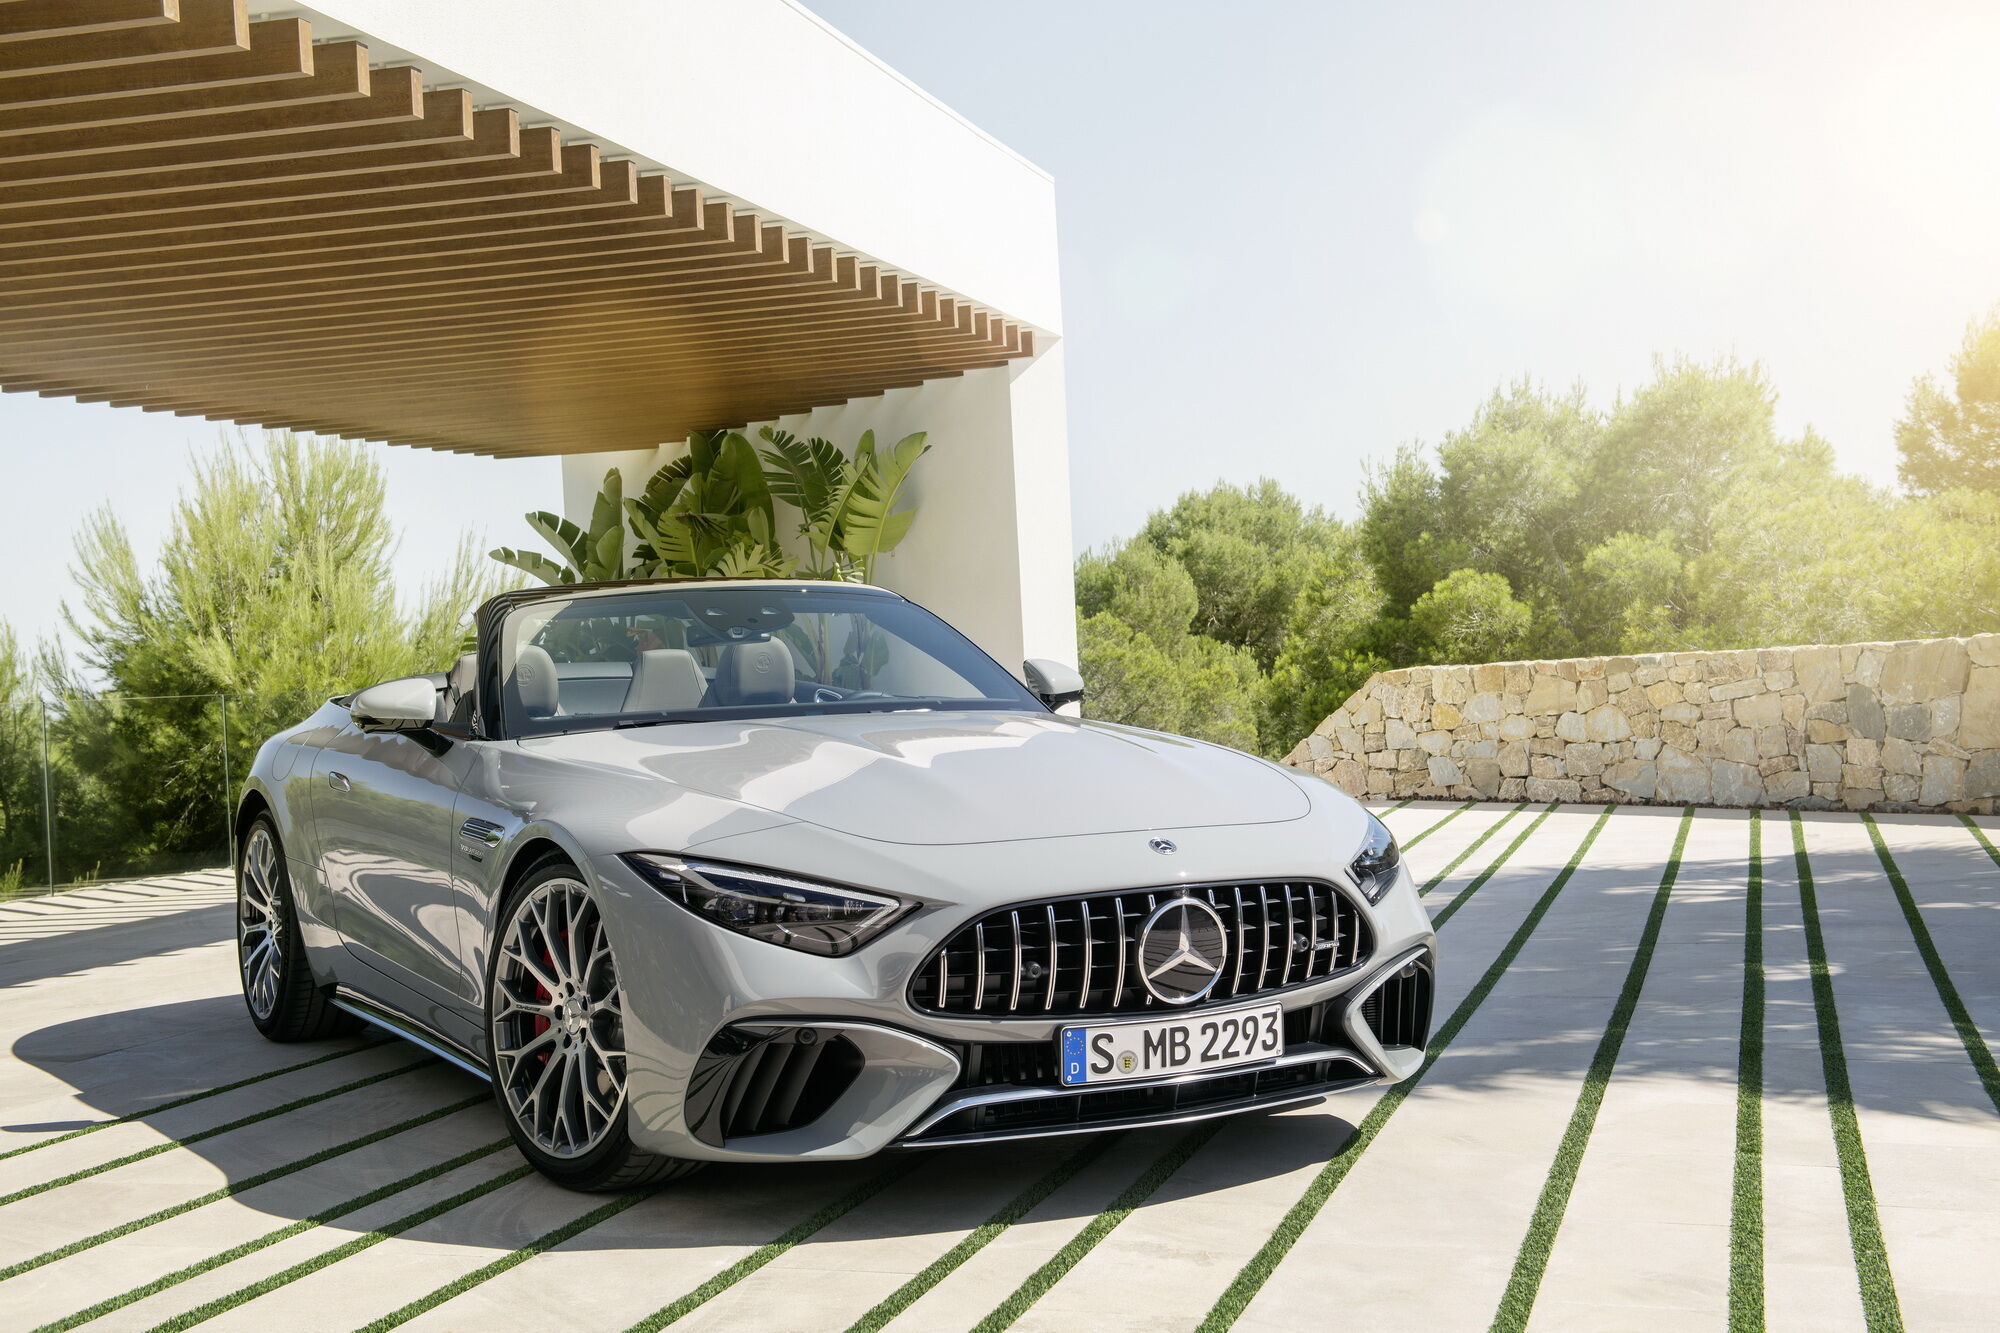 Нова генерація моделі SL розроблена "з чистого листа" спеціалістами спортивного підрозділу Mercedes-AMG